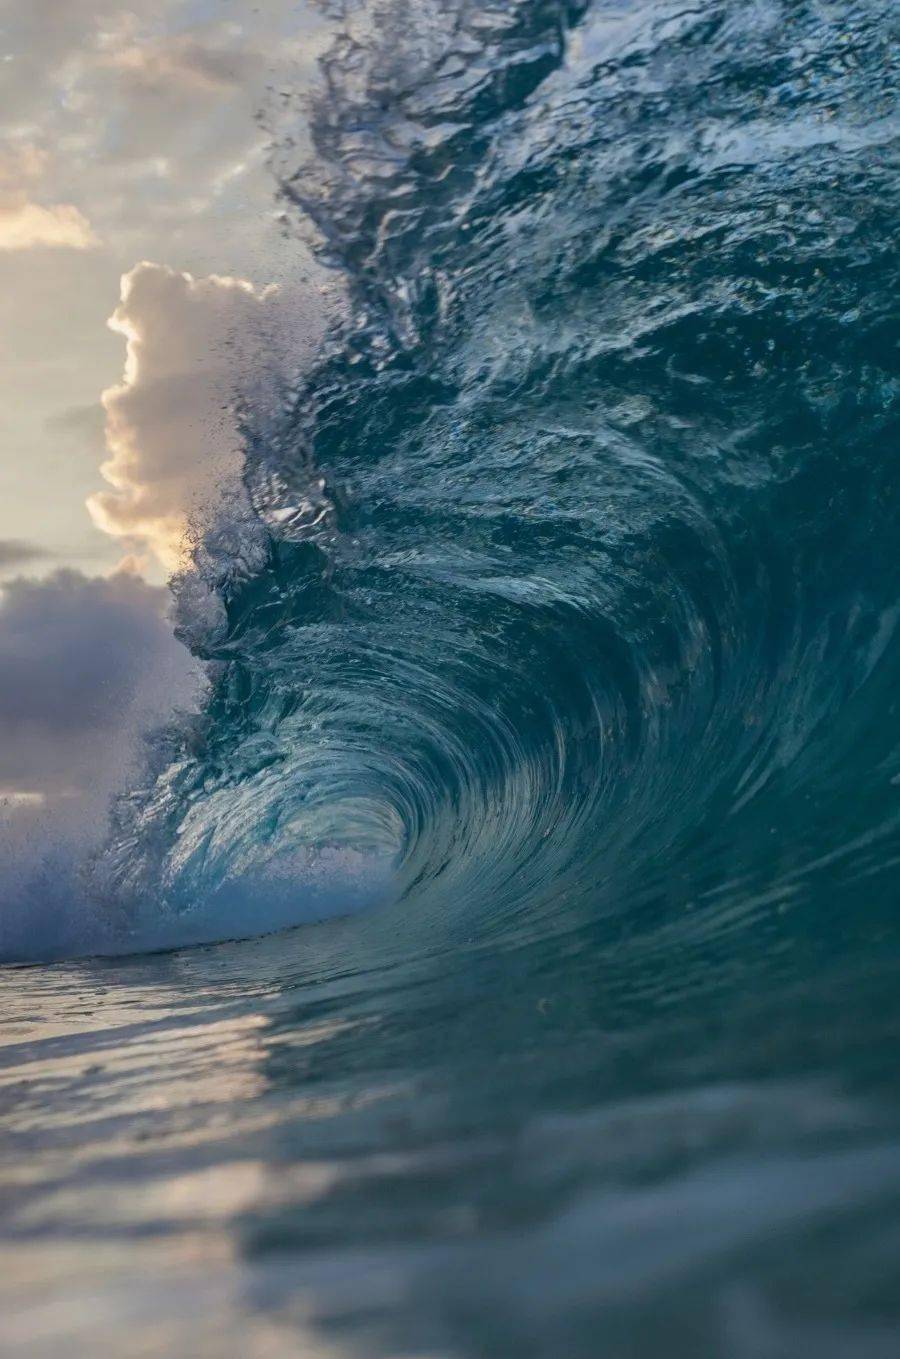 【摄影素材】几千张大海浪花图片素材!_手机搜狐网